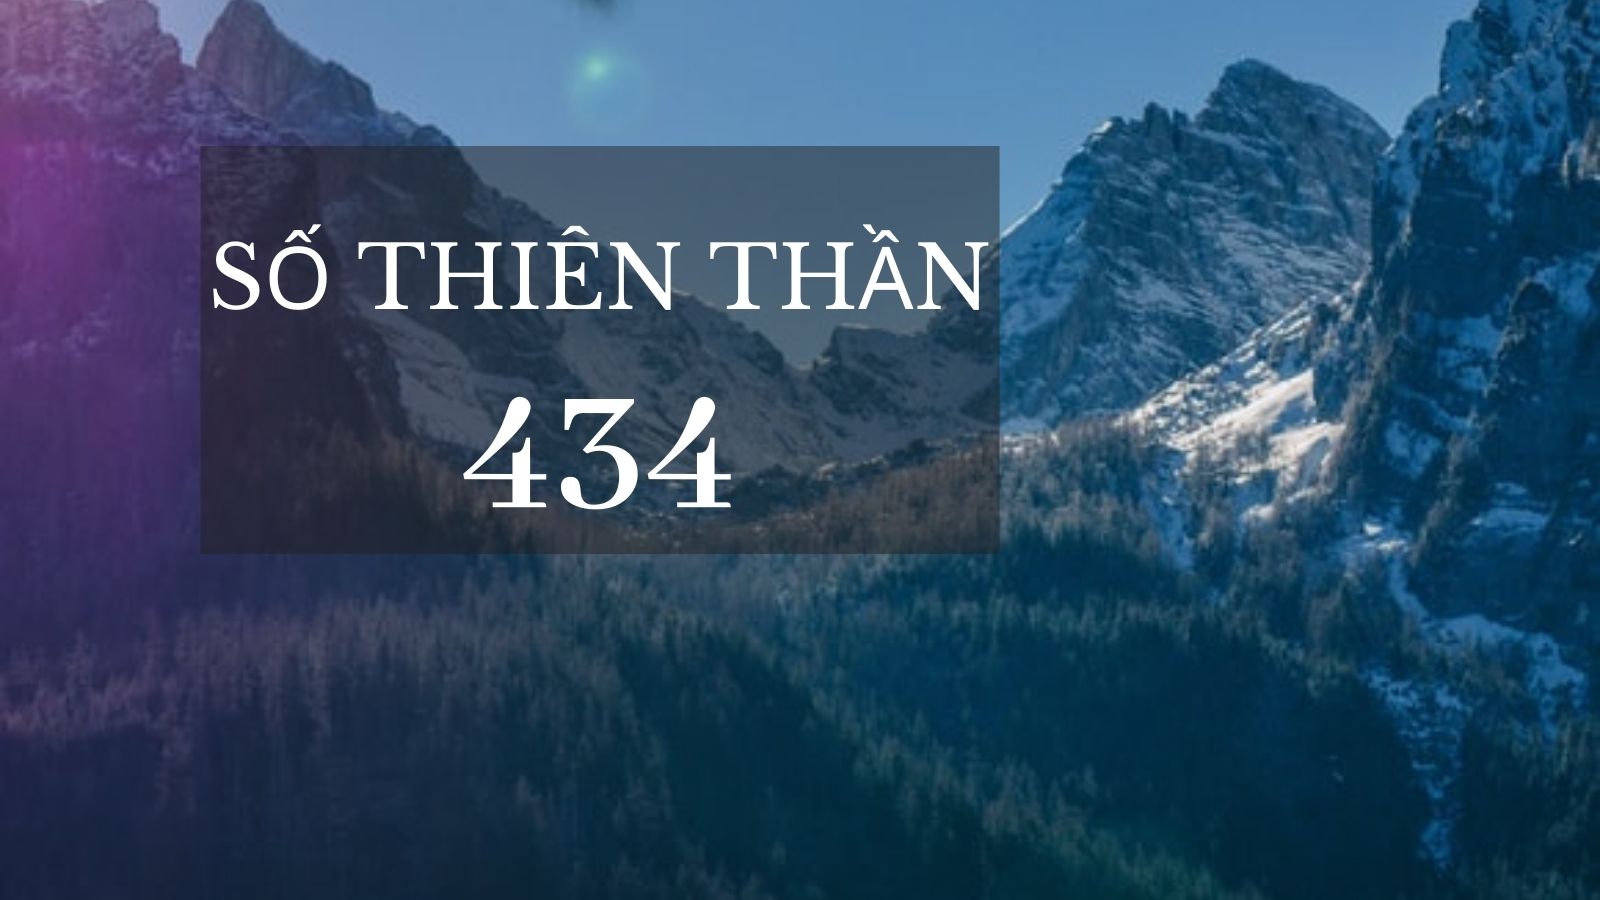 Số thiên thần 434 – biểu tượng cho sự nỗ lực và chăm chỉ mà bạn đang sở hữu